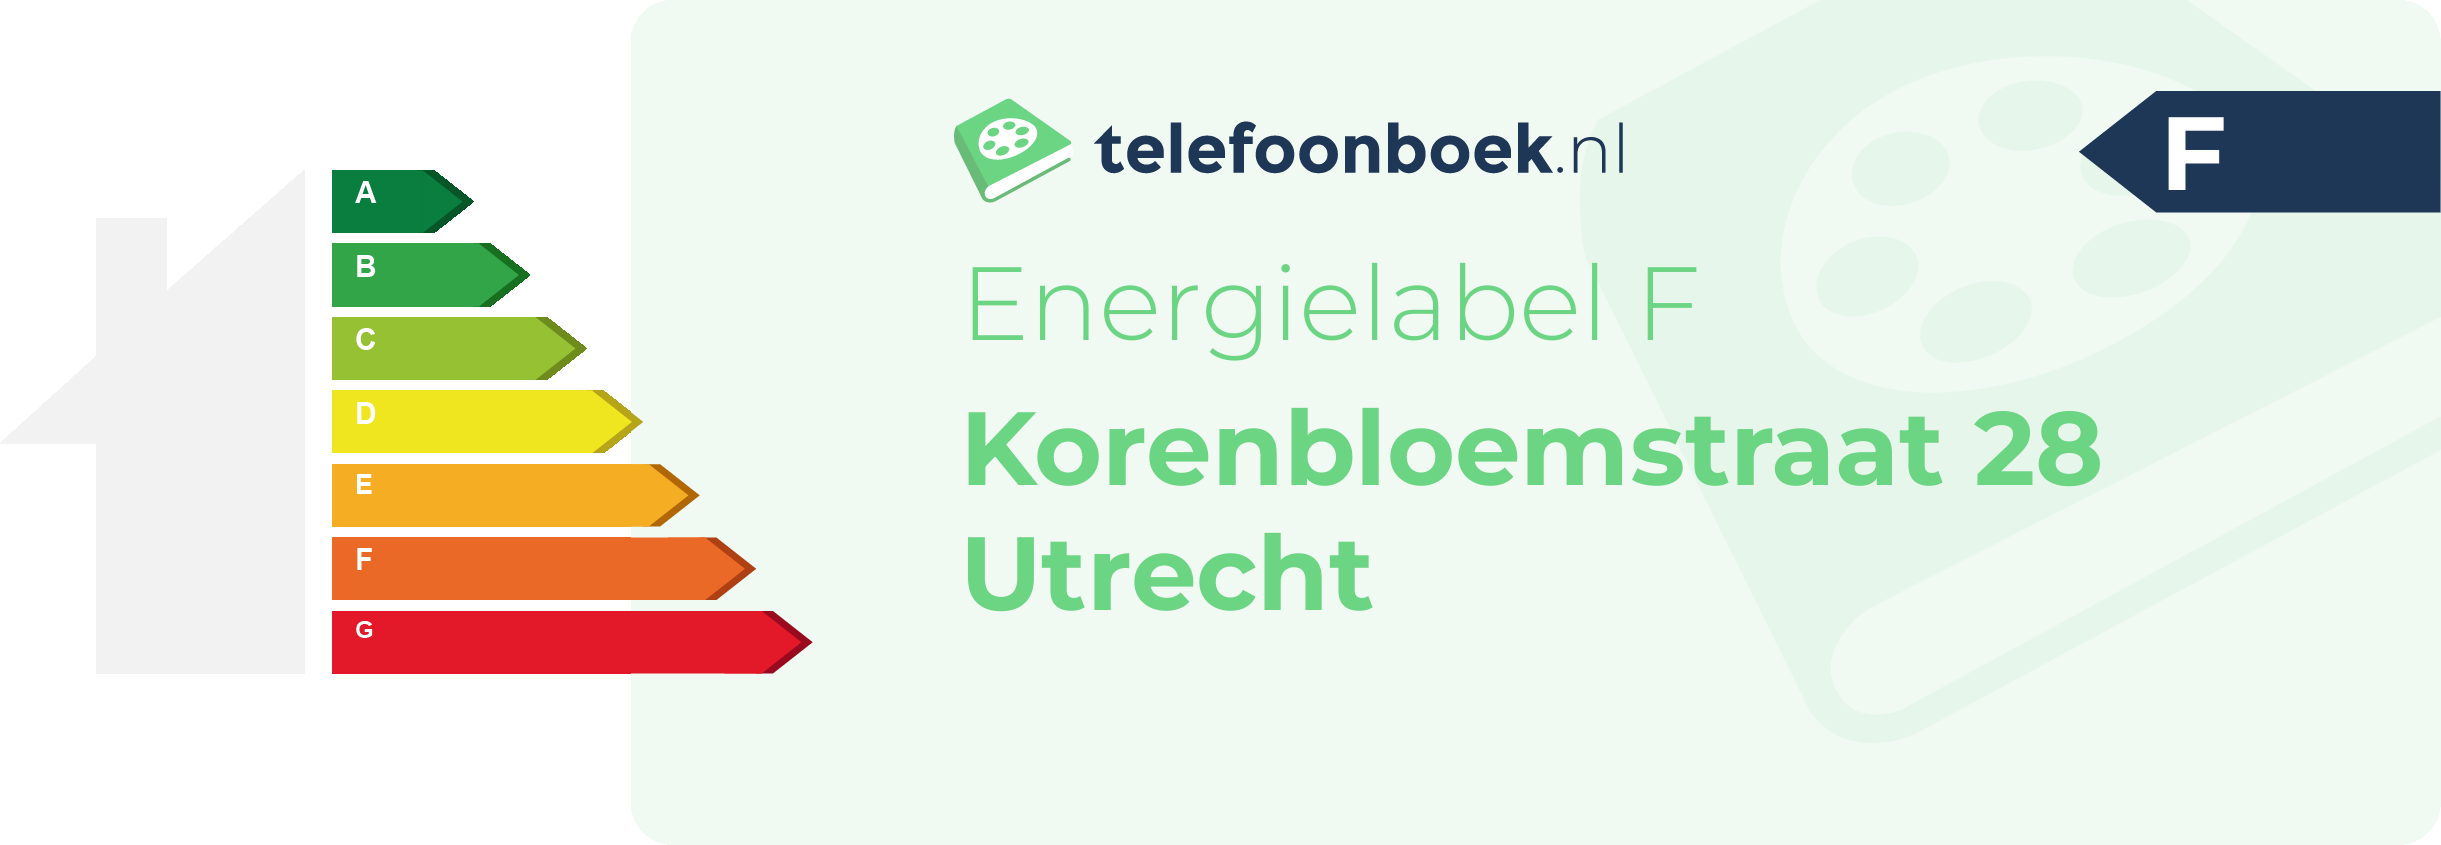 Energielabel Korenbloemstraat 28 Utrecht